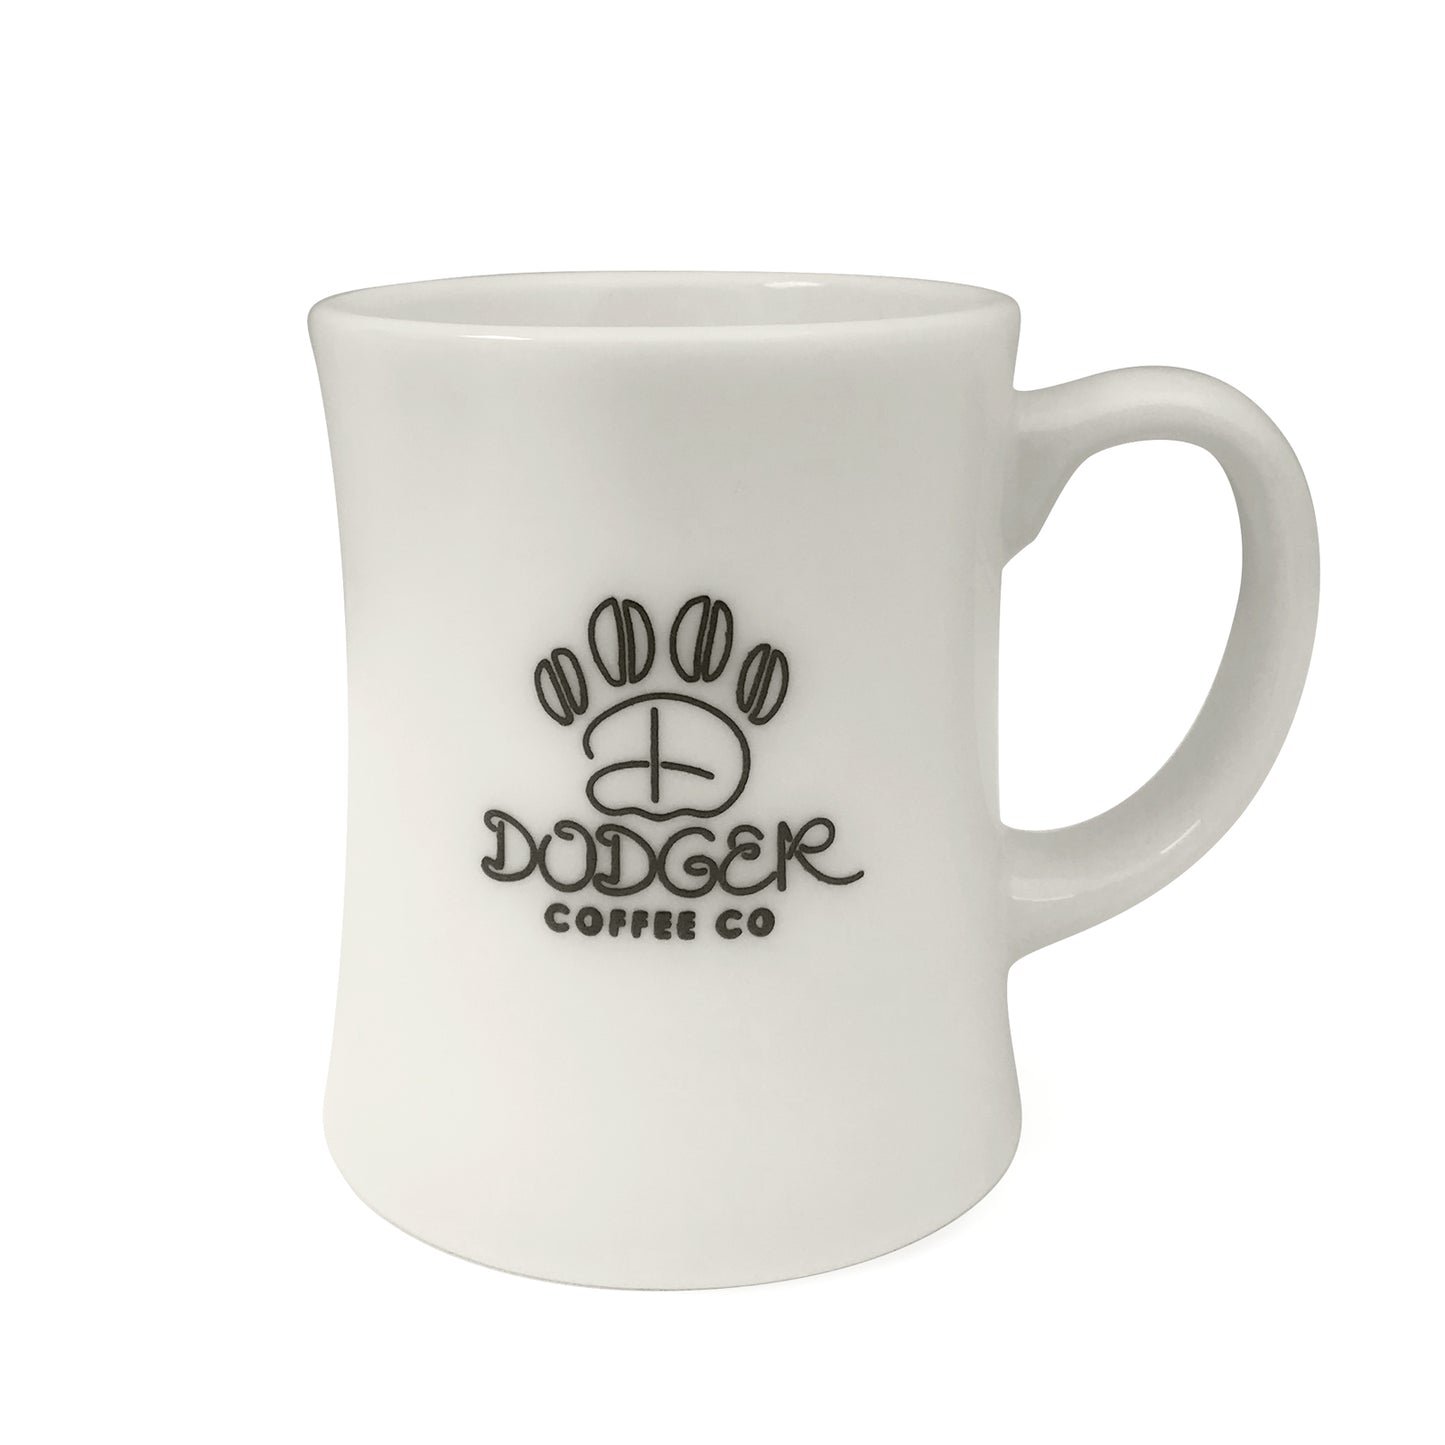 Dodger Coffee Mug